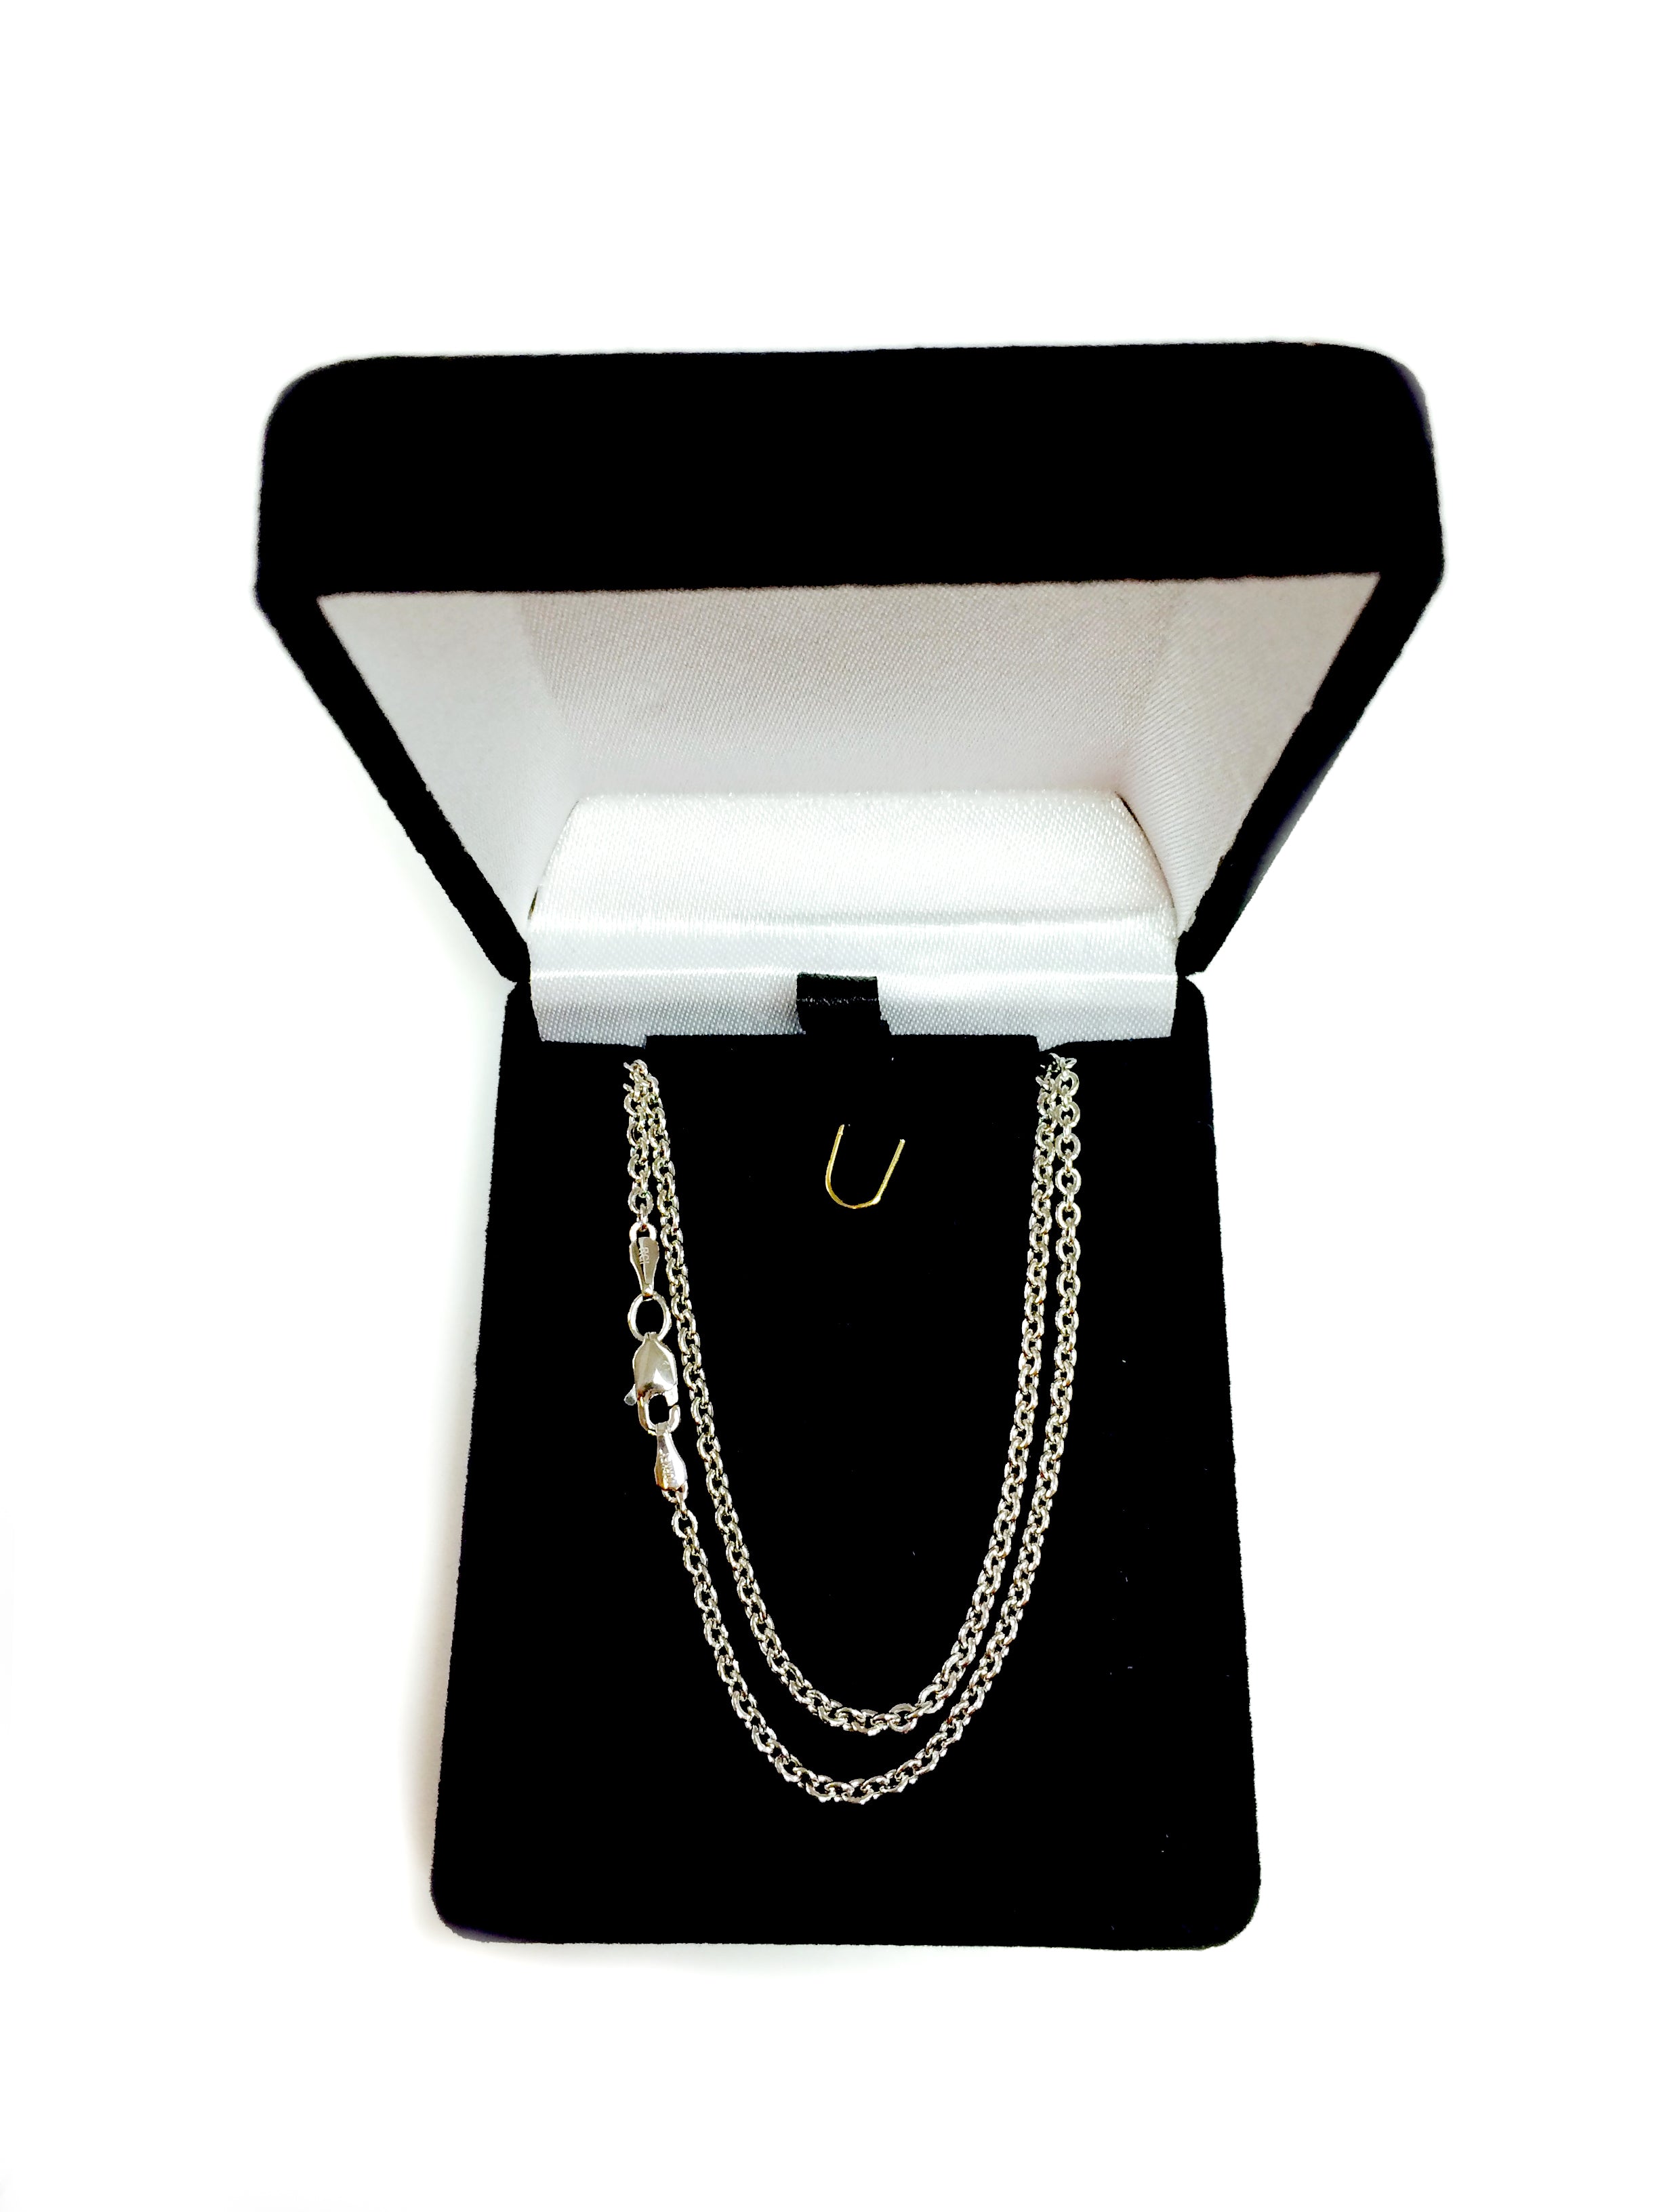 Collana a catena Forsantina in oro bianco 14k, gioielli di alta qualità da 2,3 mm per uomini e donne